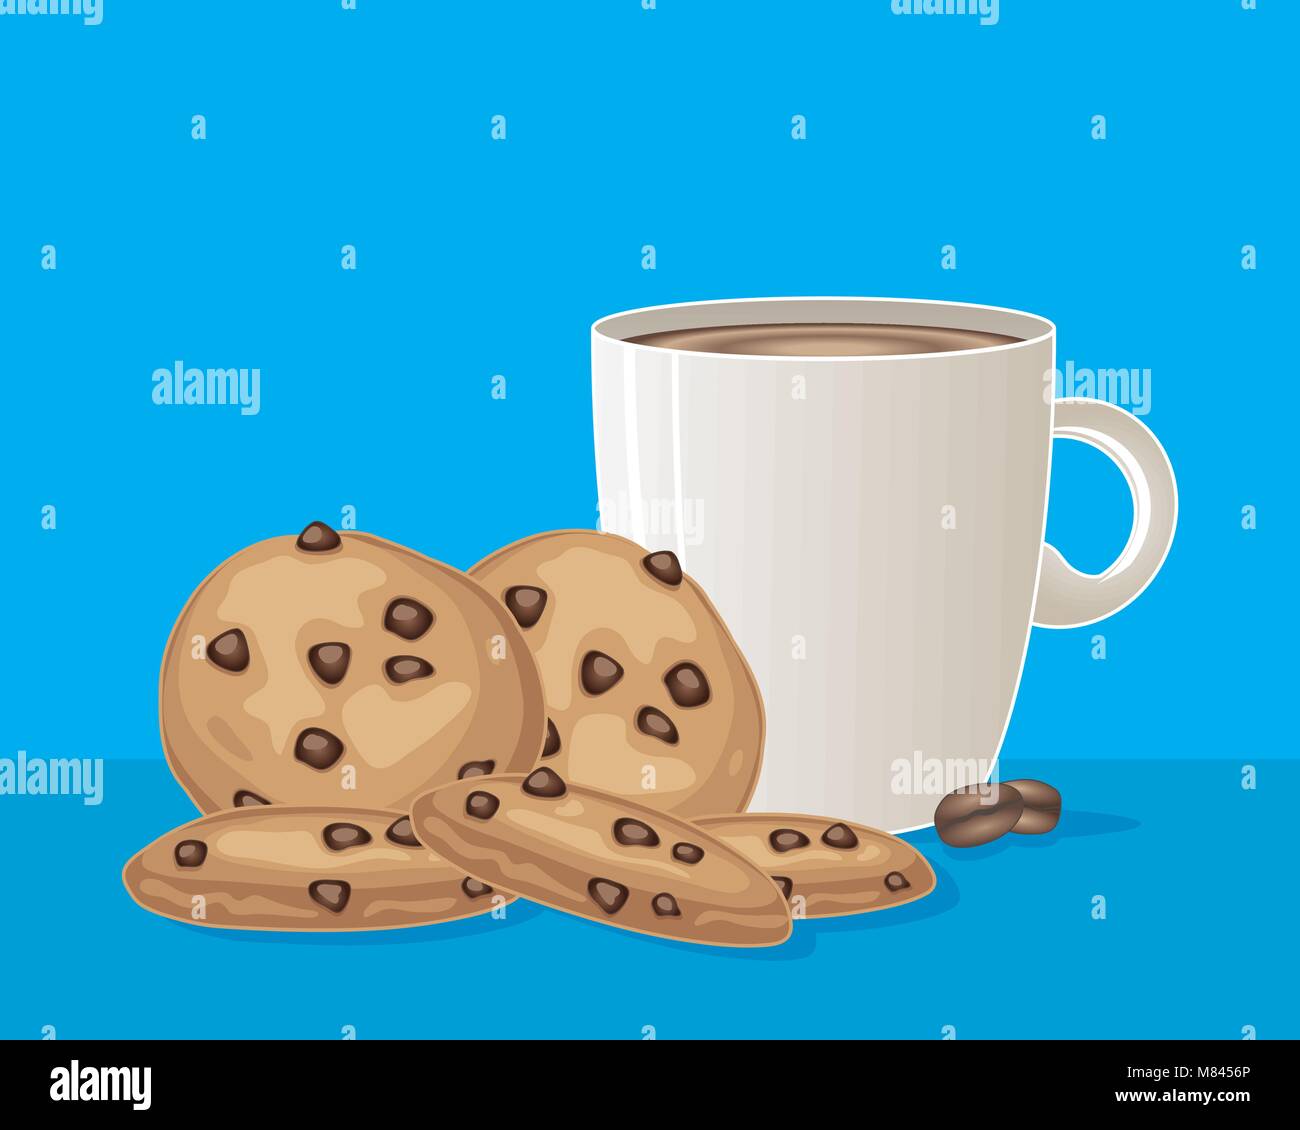 Un vecteur illustration en eps 10 format d'une grande tasse de café blanc avec des cookies aux pépites de chocolat sur fond bleu turquoise Illustration de Vecteur